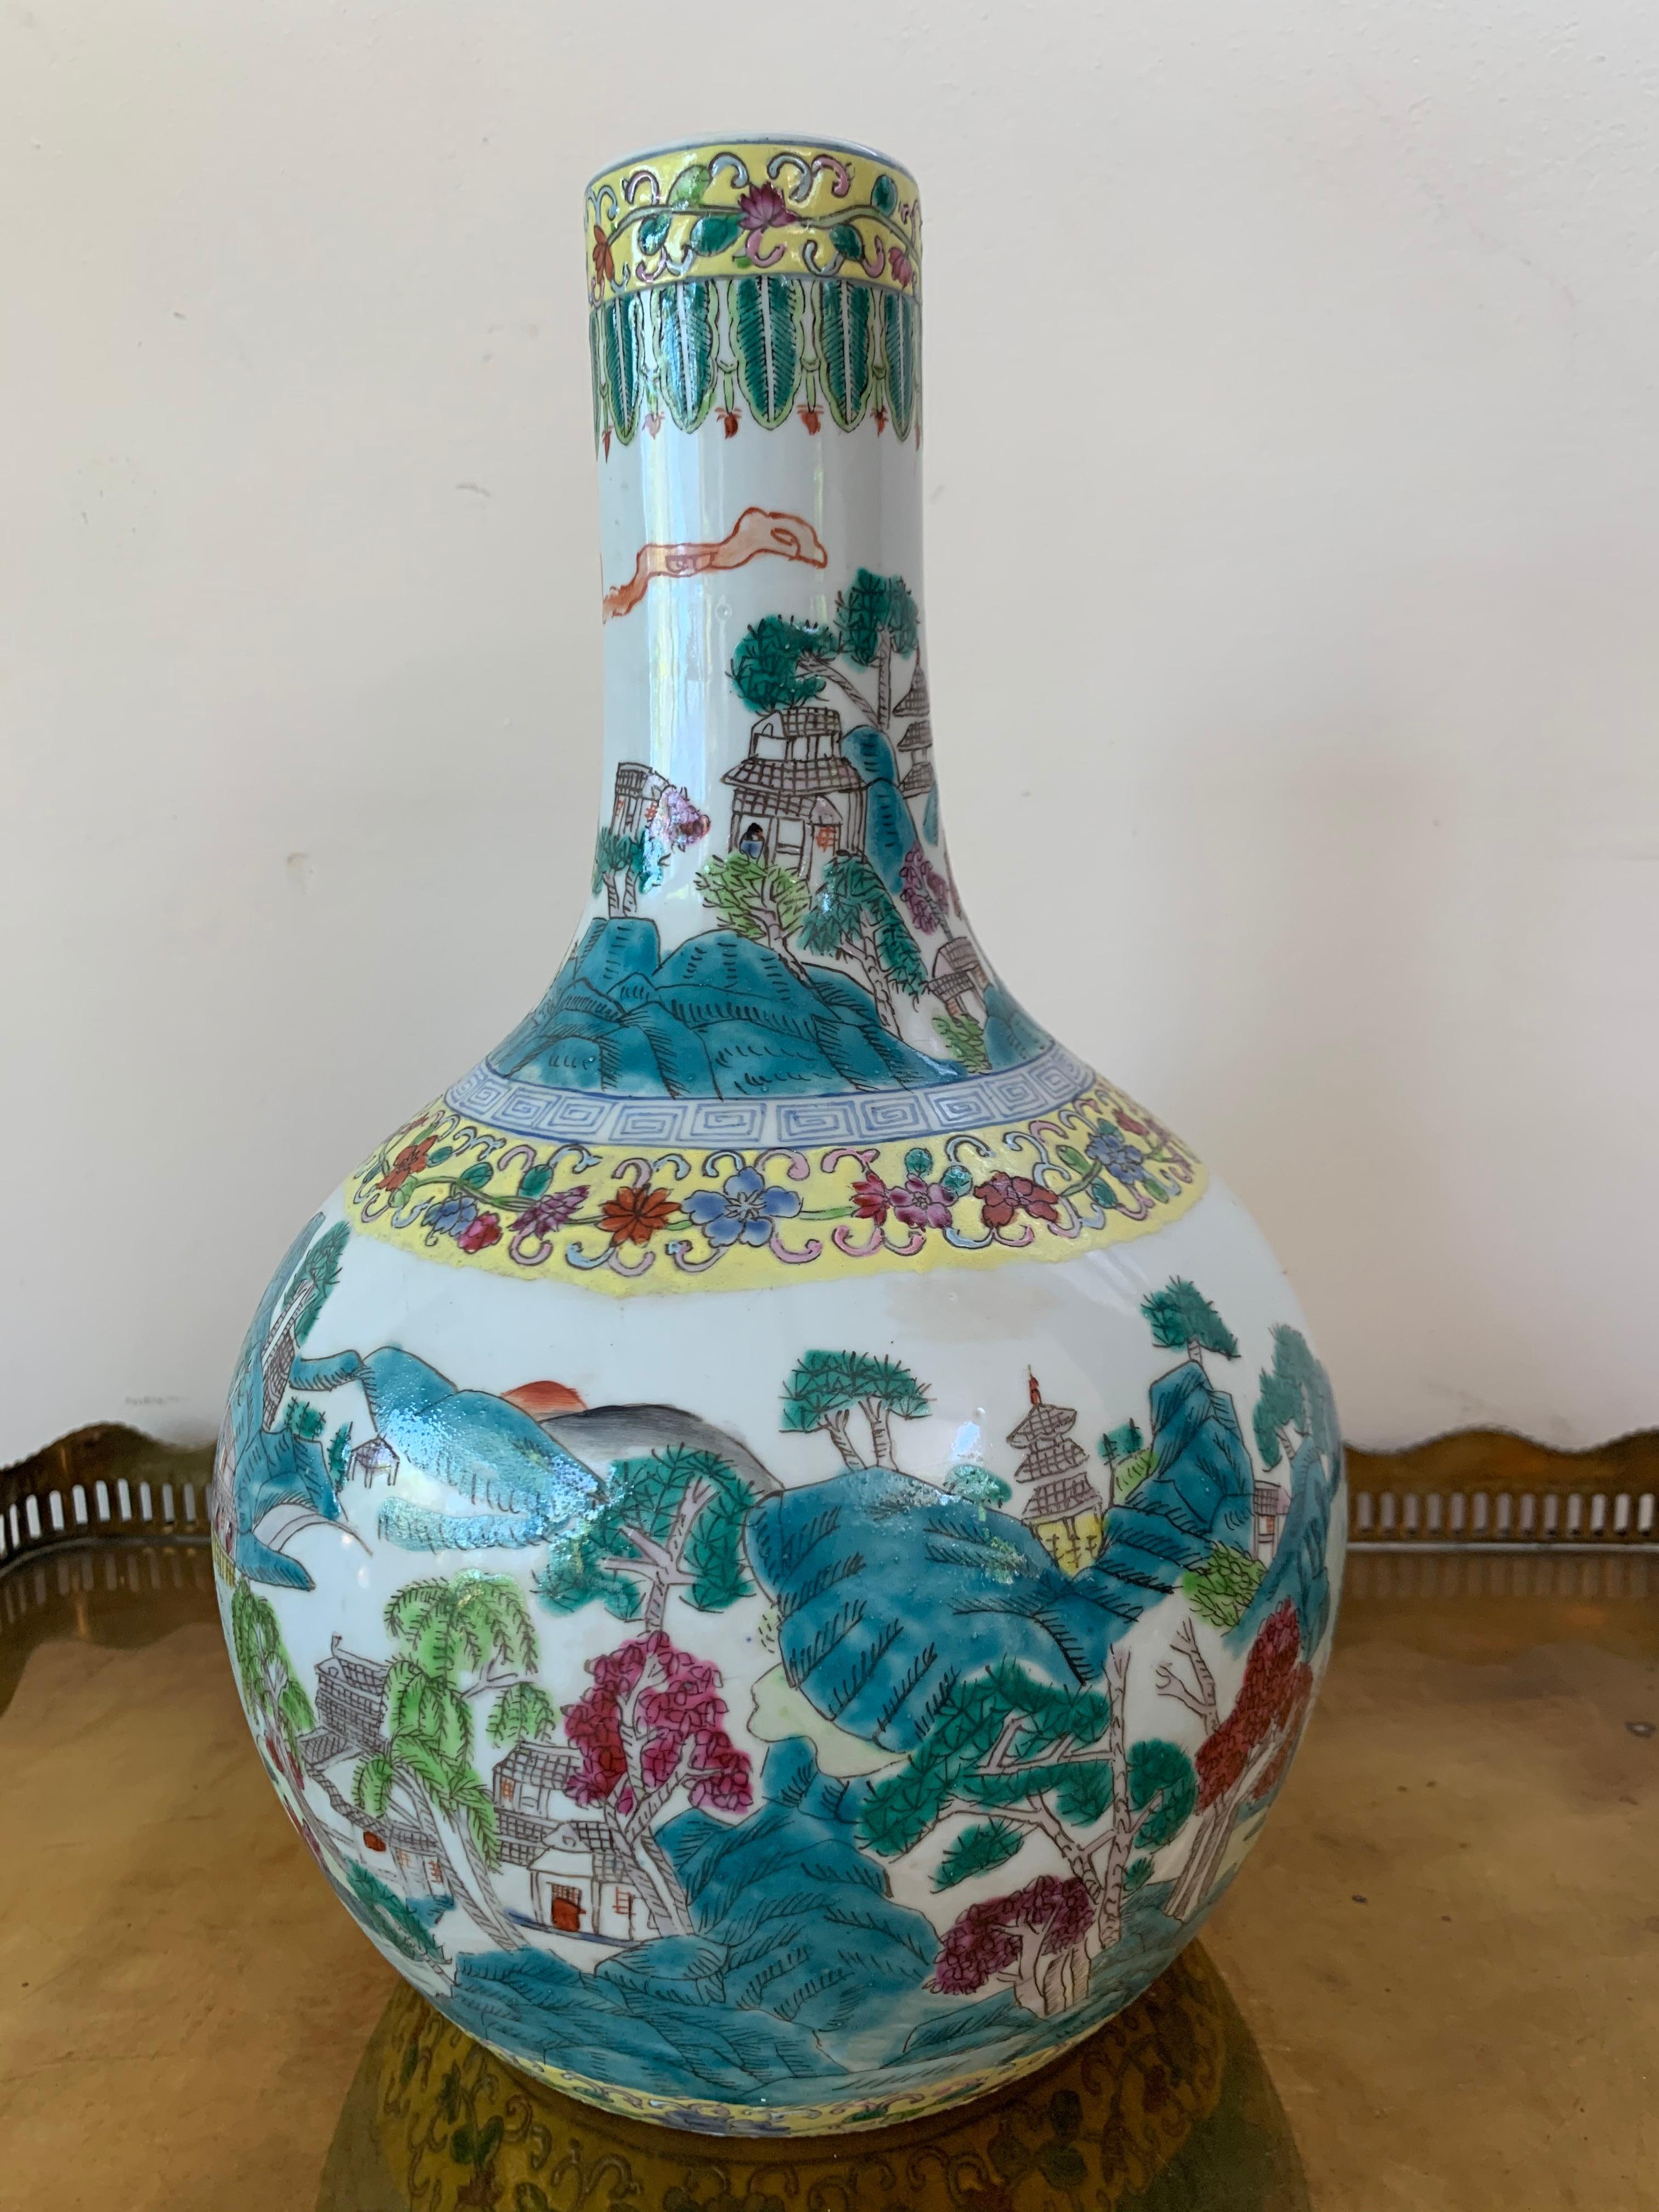 Große Tianqiuping-Vase oder kugelförmige Cloisonné-Vase aus dem frühen 20. Cloisonné-Emaille von höchster Qualität, mit einem Hintergrund mit grafischen Szenen und Blumenmustern und mit drei großen rahmenartigen Einsätzen mit detaillierten